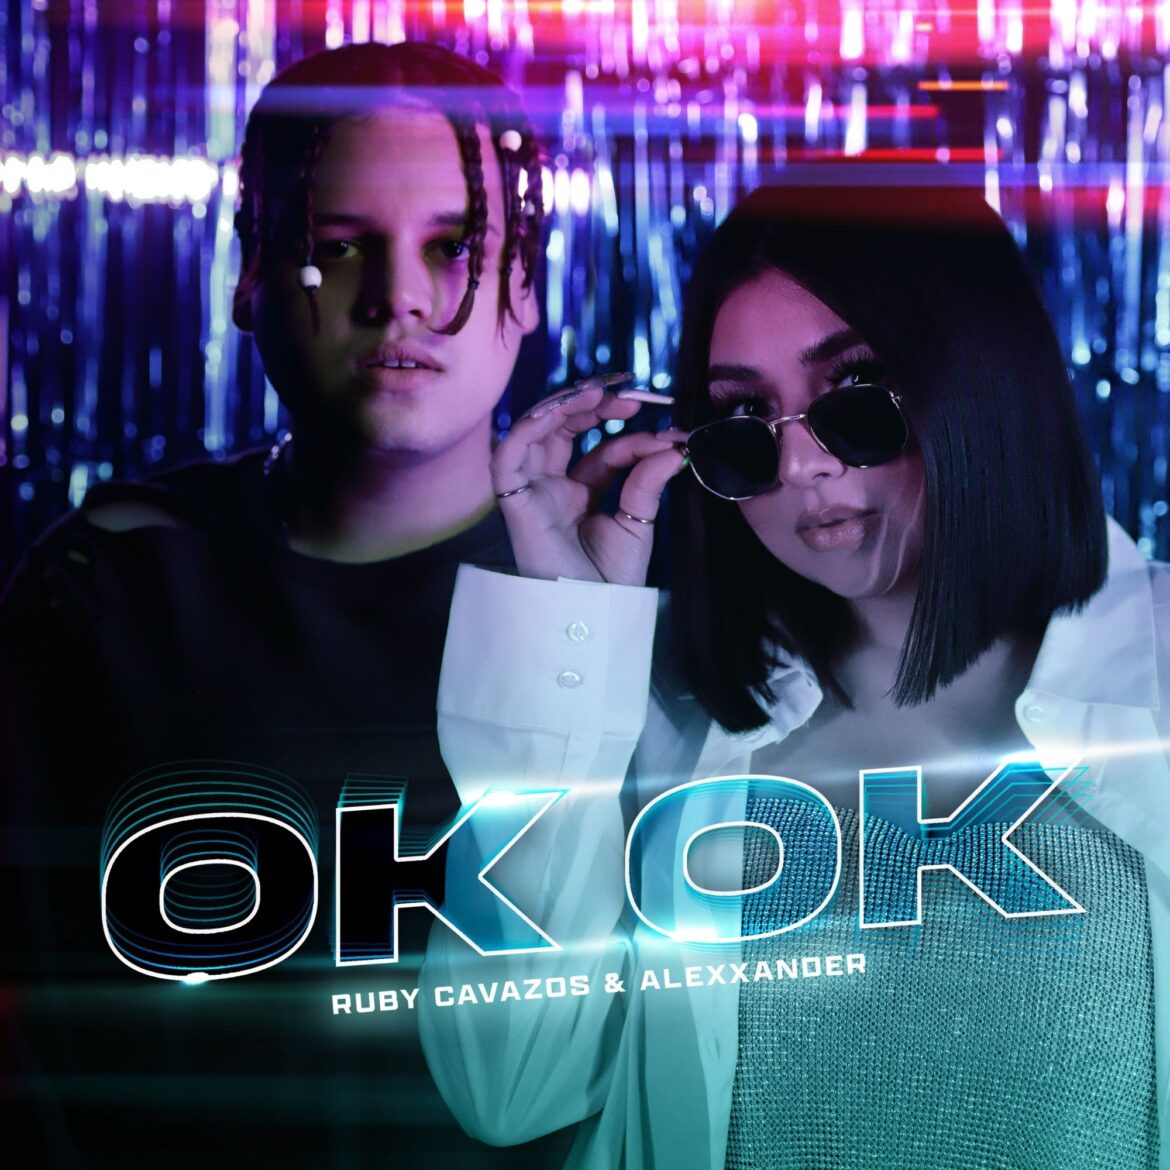 La talentosa cantante Ruby Cavazos se une al boricua Alexxander en su nuevo tema “Ok Ok”